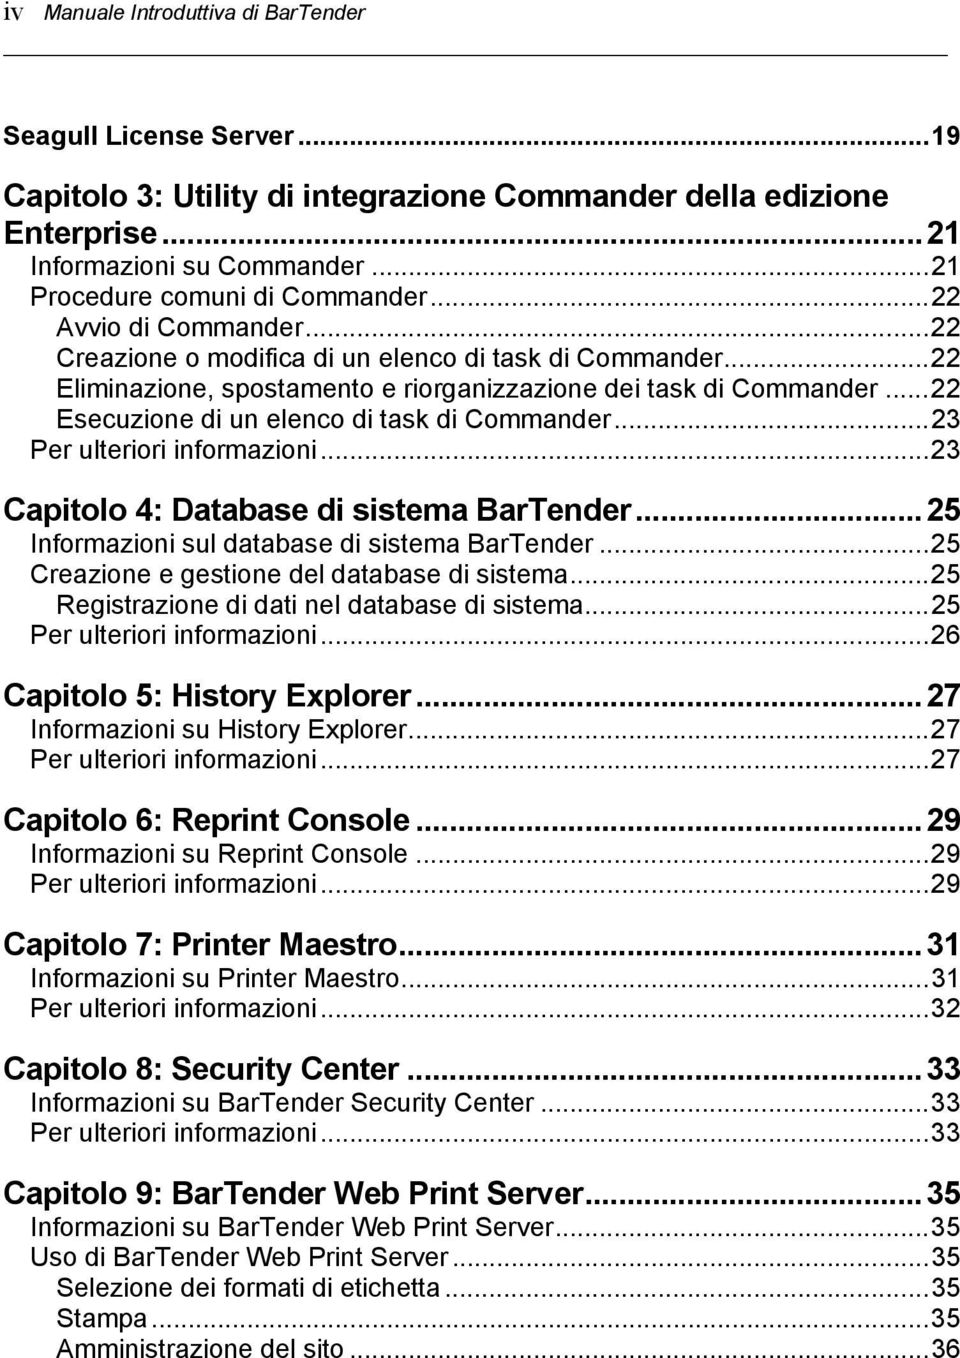 ..22 Esecuzione di un elenco di task di Commander...23 Per ulteriori informazioni...23 Capitolo 4: Database di sistema BarTender...25 Informazioni sul database di sistema BarTender.